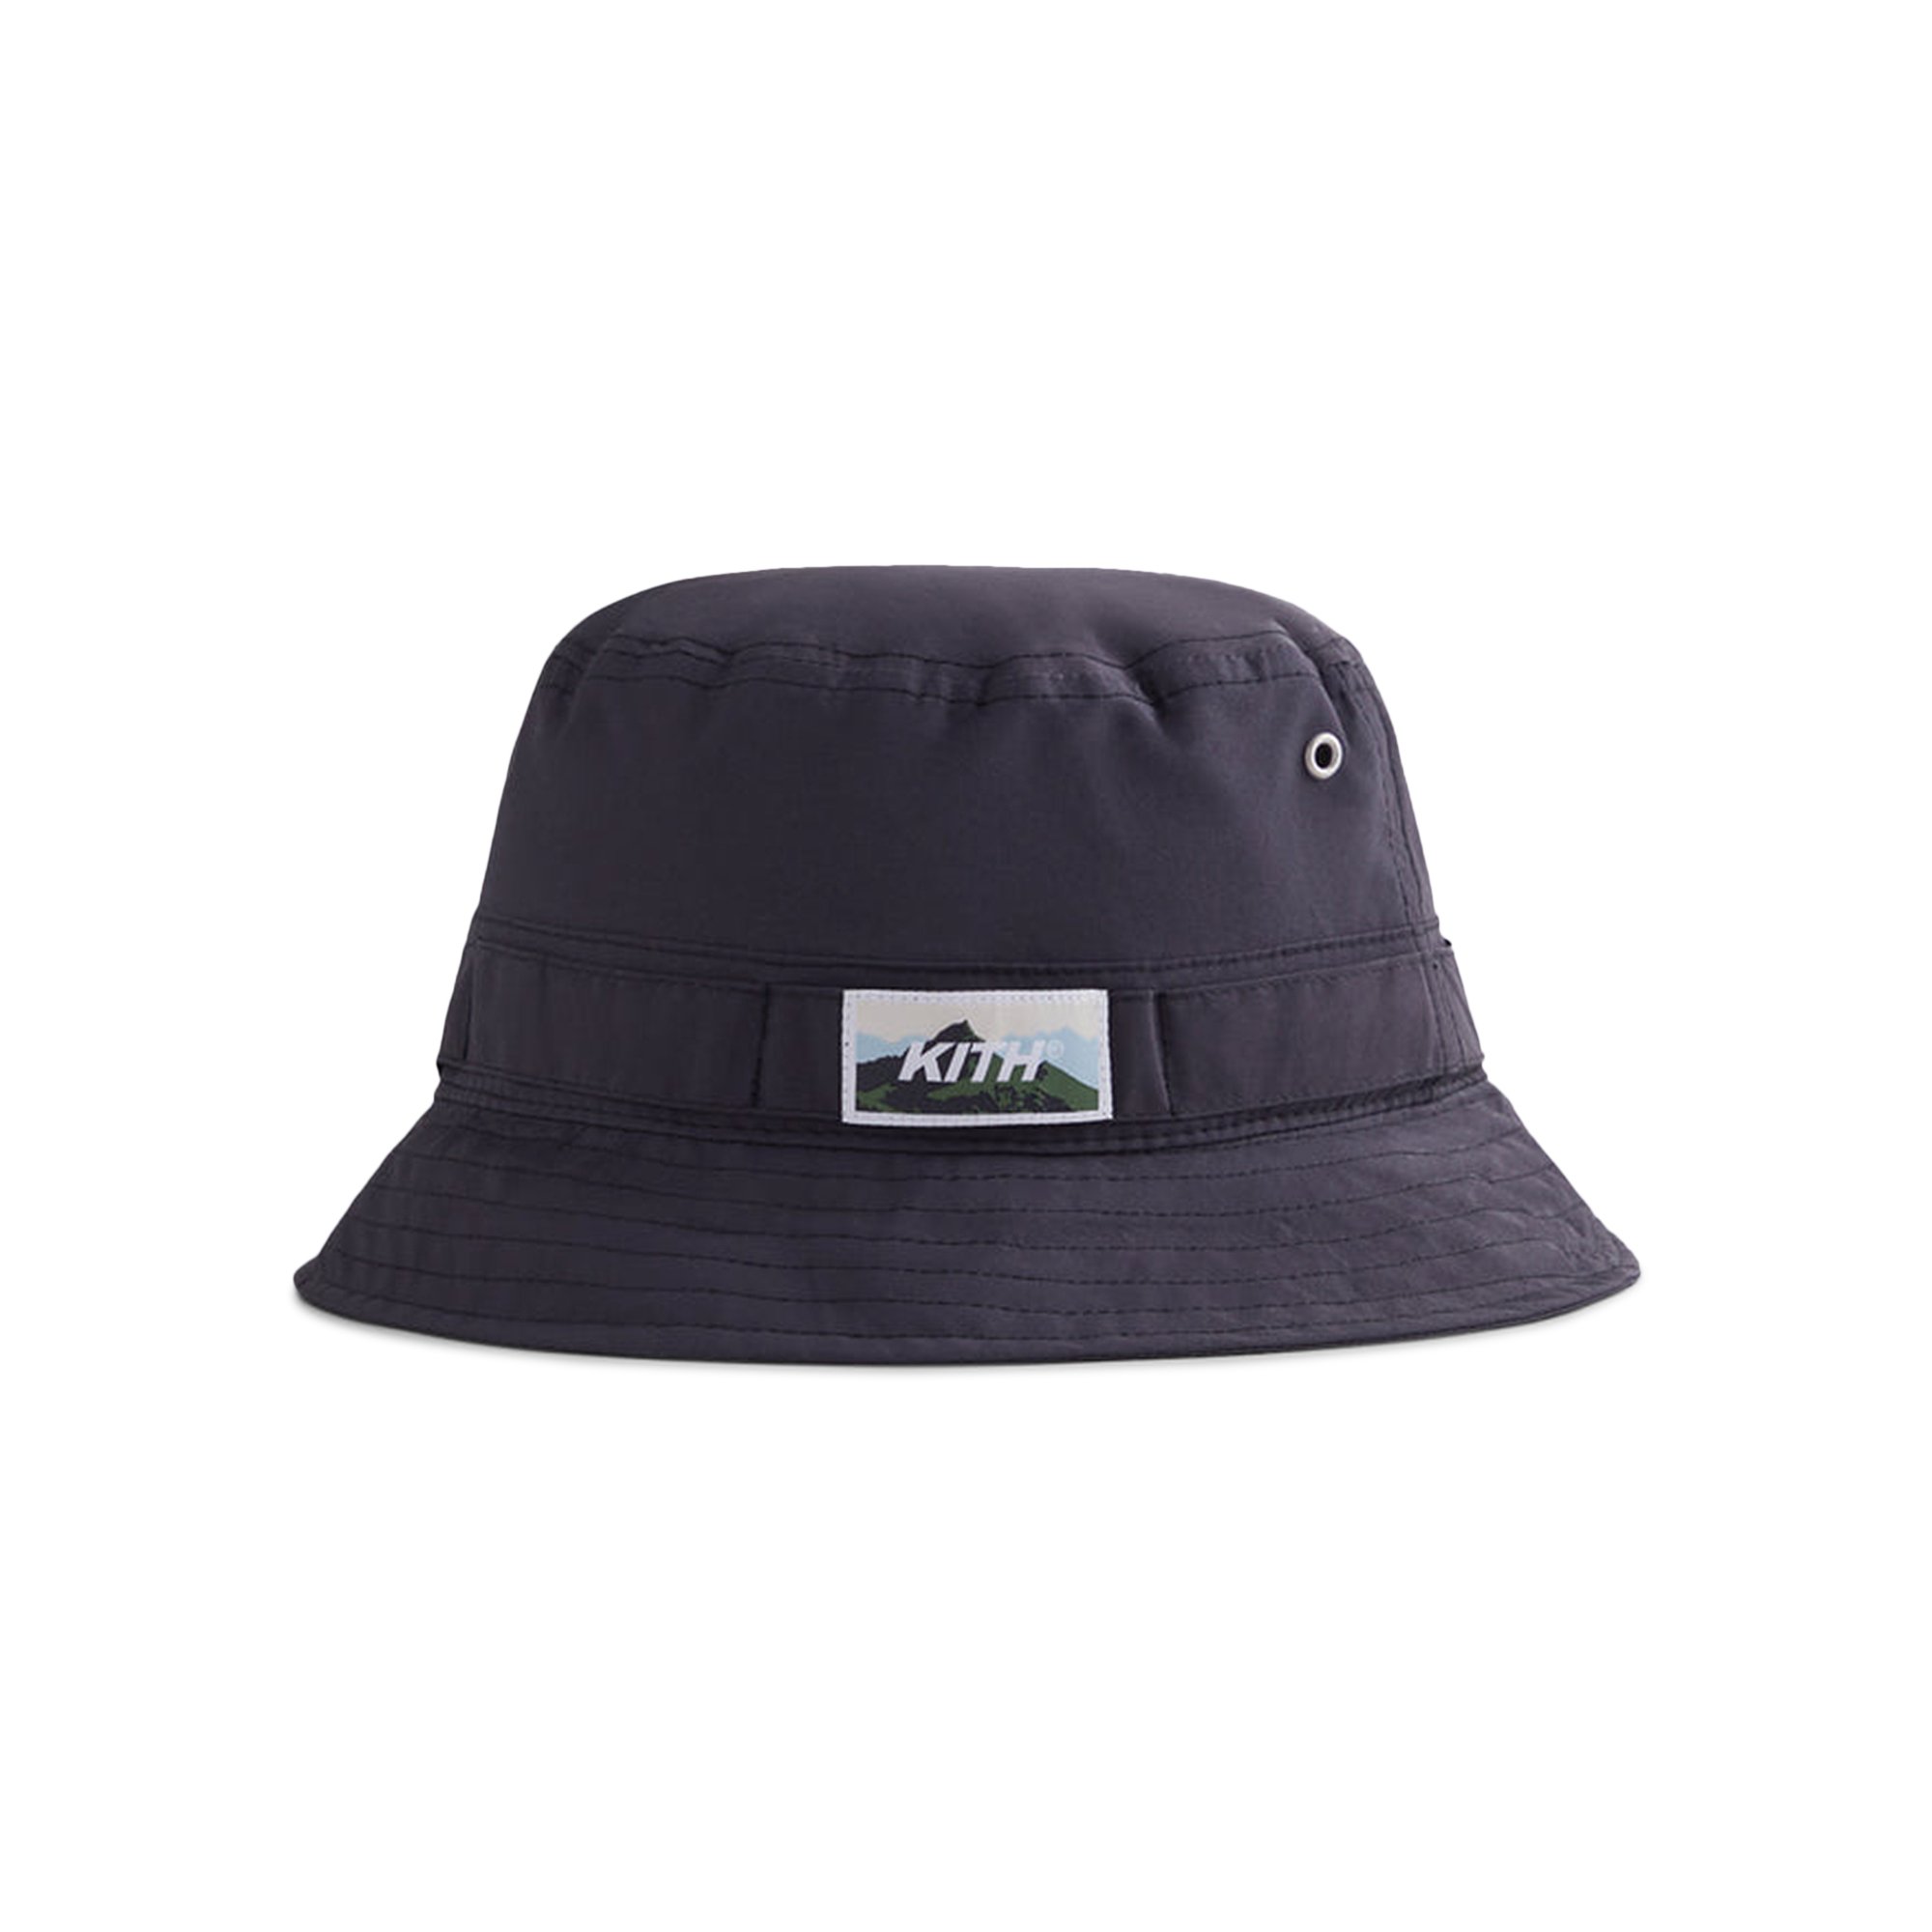 Buy Kith Equipment Bucket Hat 'Apocalypse' - KHM050195 020 | GOAT IT